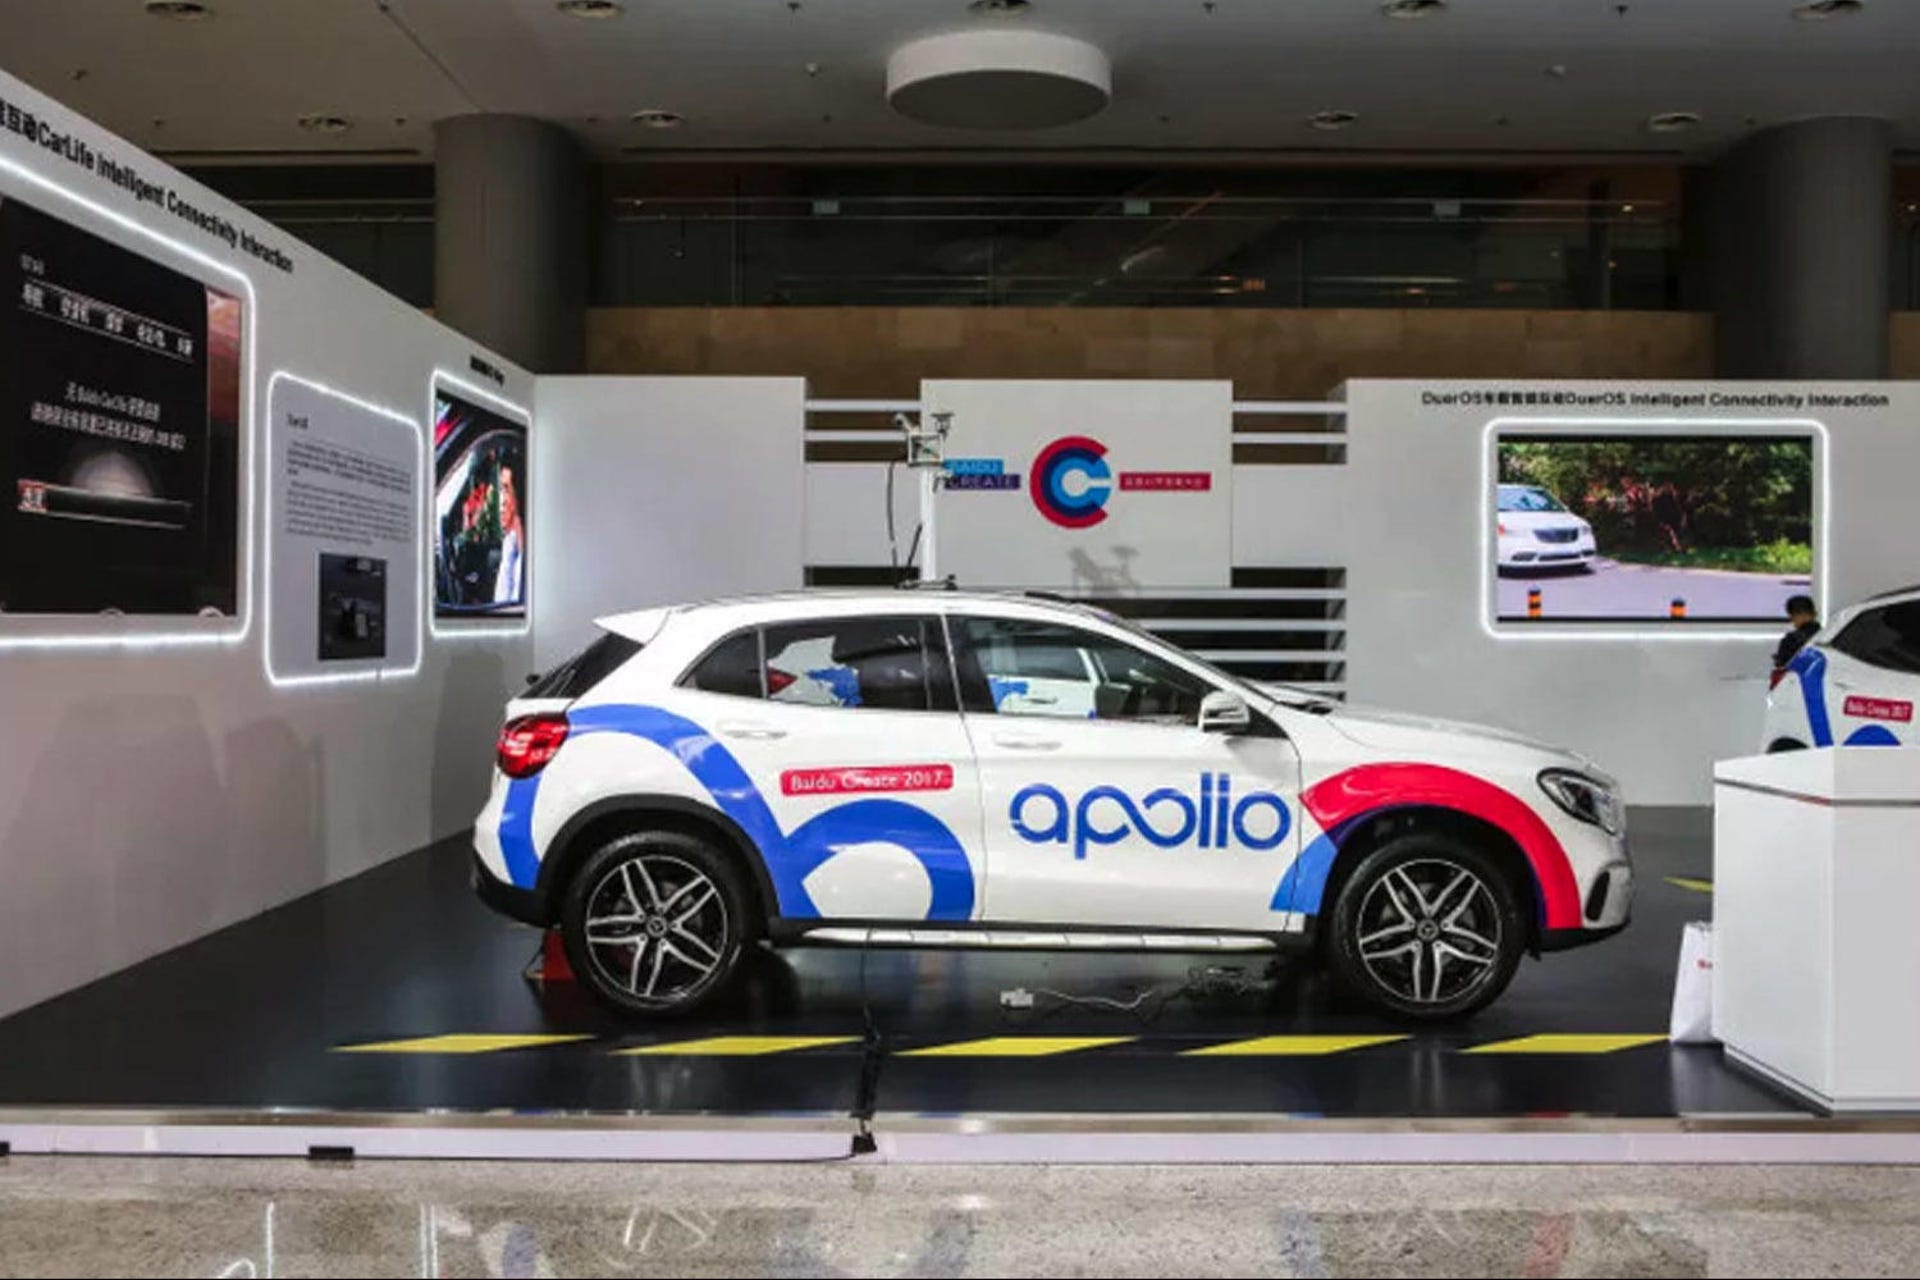 Baidu Apollo self-driving car